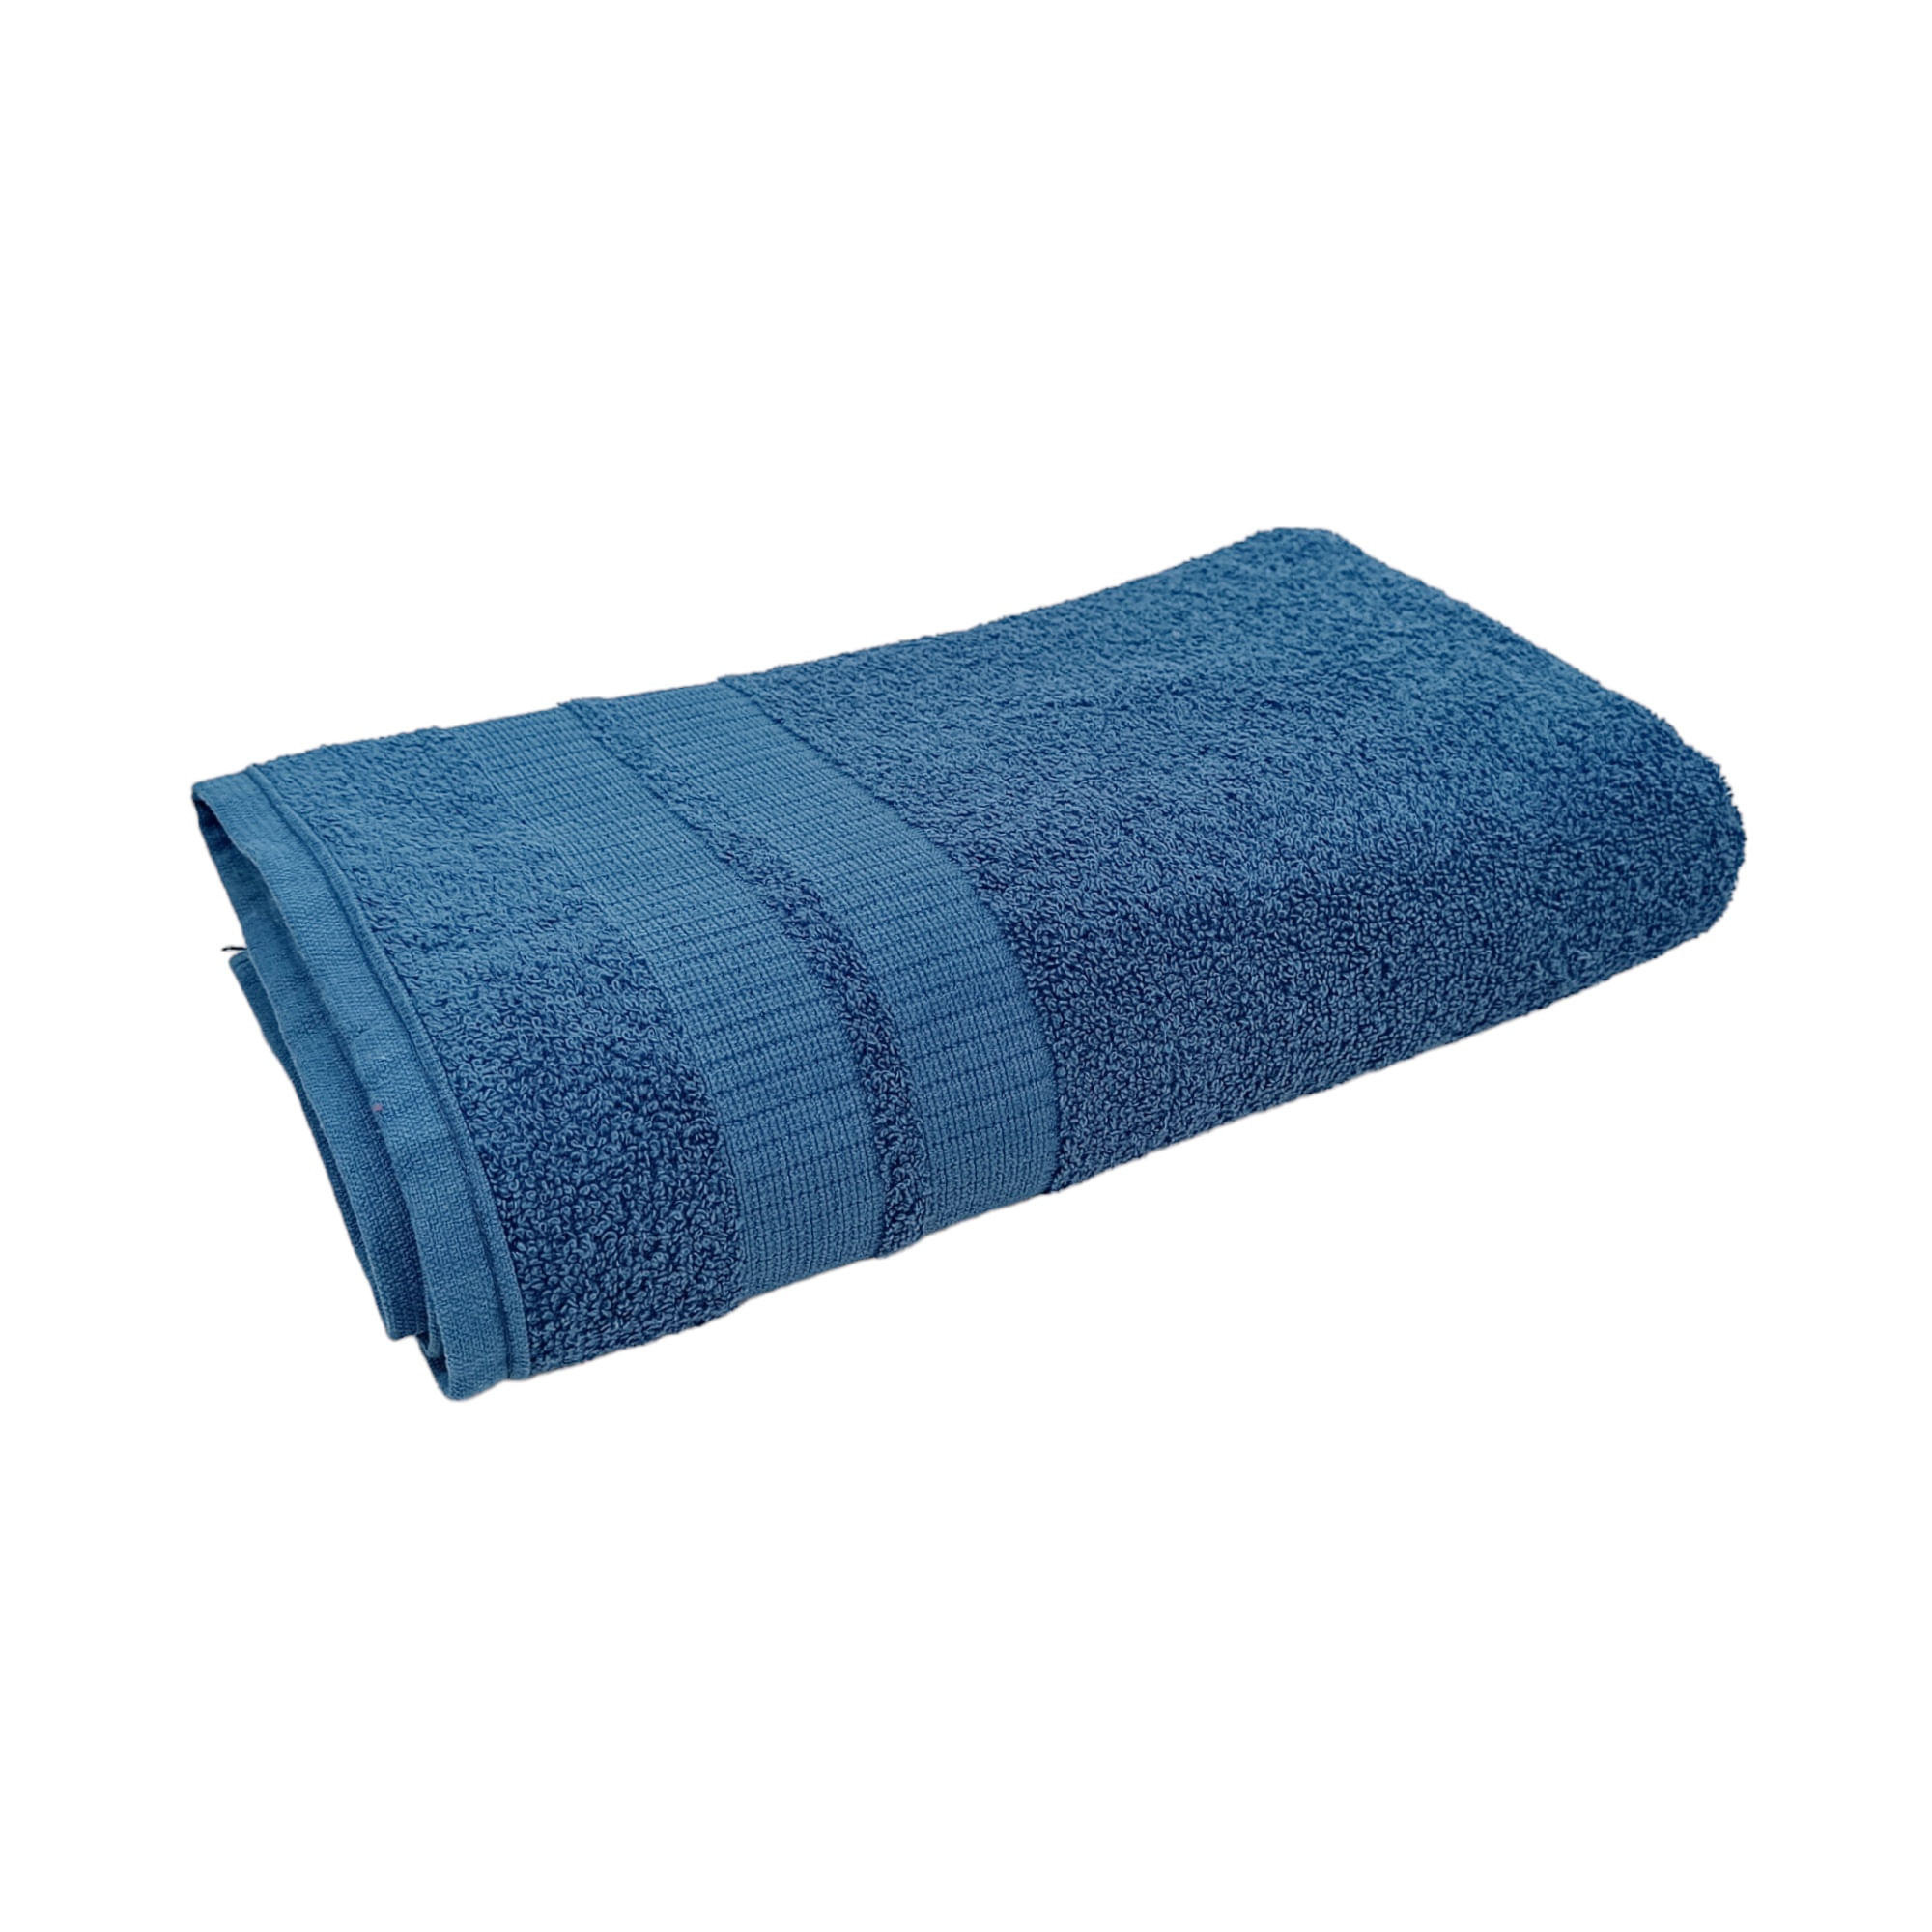 Nova Blue Toalla Poncho – Salida de baño con estampado de hojas de palma  rosa tropical, con capucha (33 x 37) – 100% algodón turco, toalla de secado